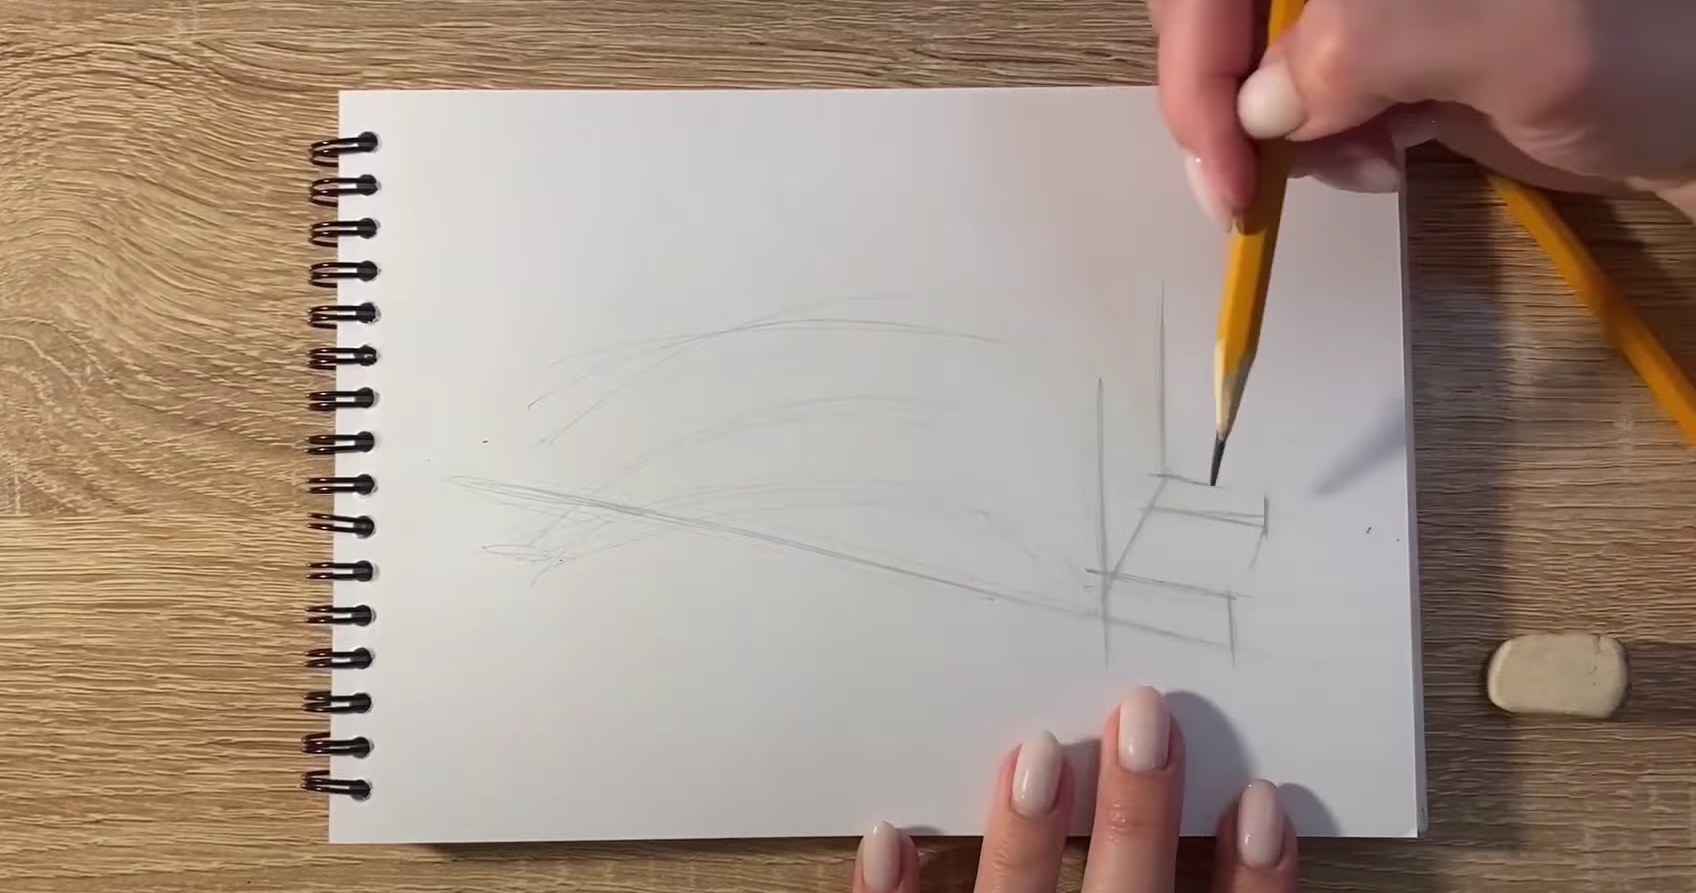 Как нарисовать мост карандашом. Инструкция для начинающих поэтапно